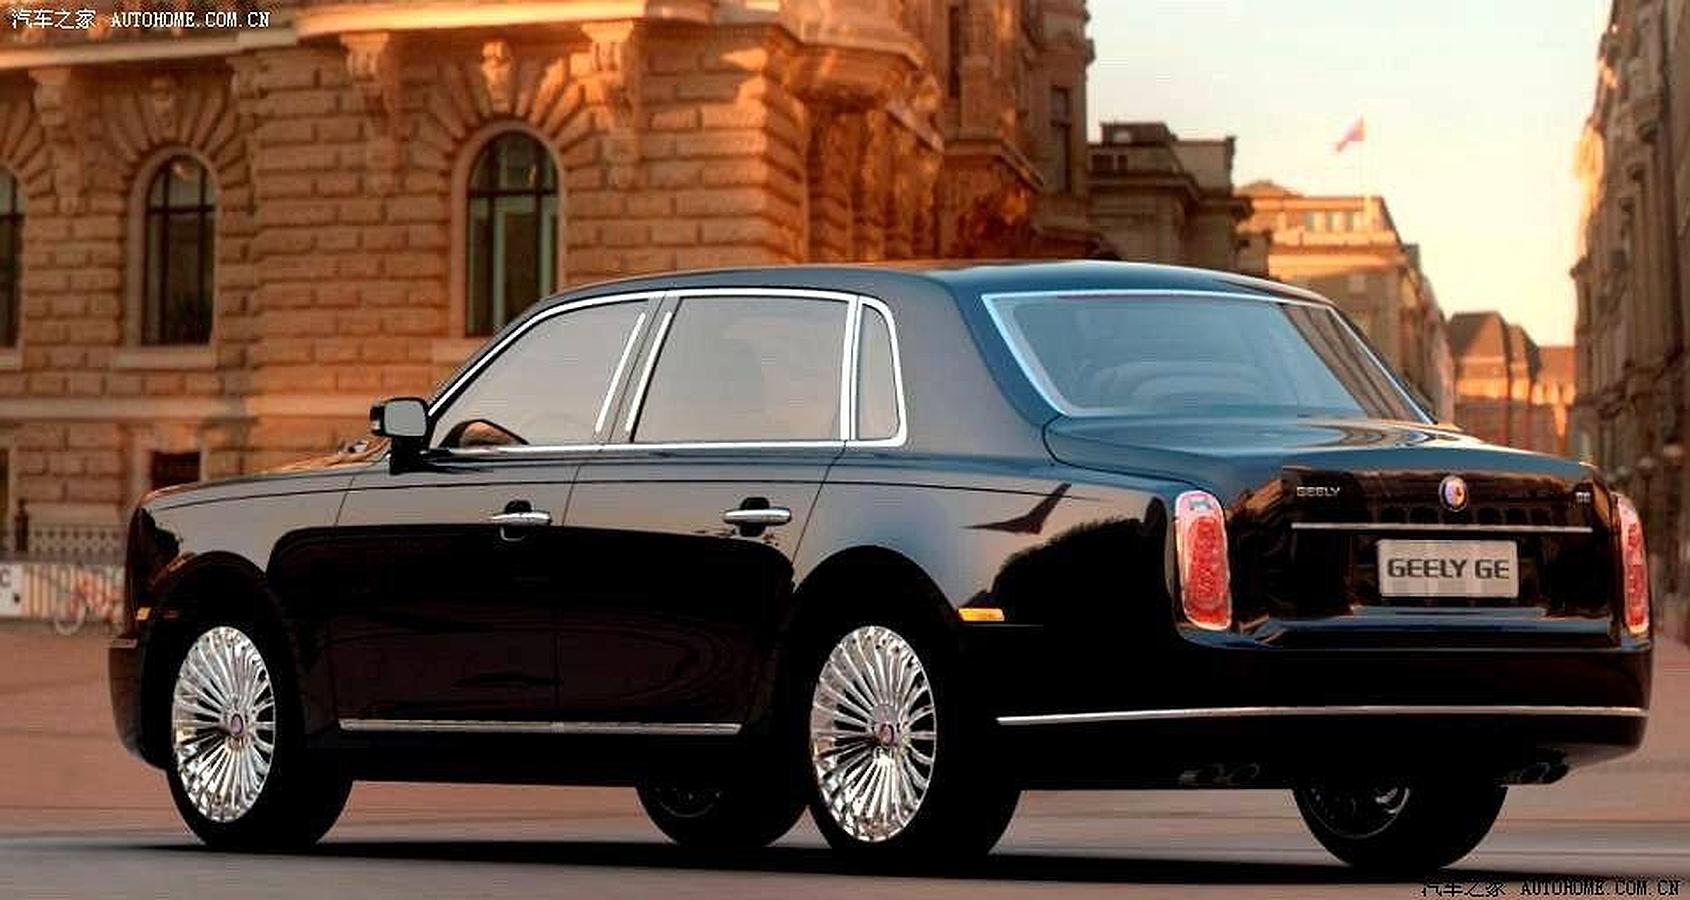 Puede parecer un Rolls-Royce Phantom, pero en realidad es su versión china. Se llama Geely GE, y su precio traducido a euros sería de unos 43.000